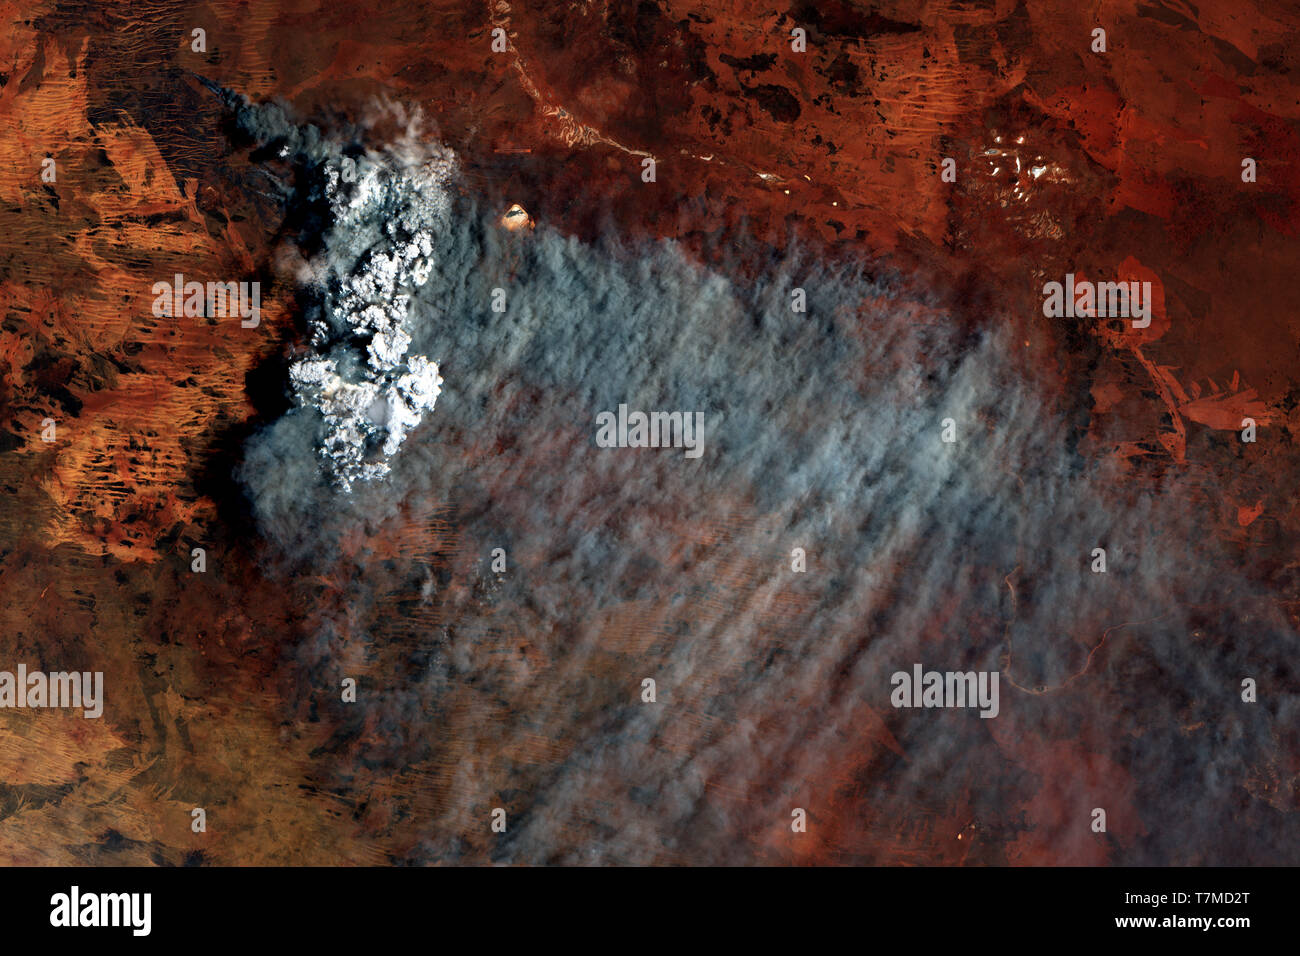 Buschbrände in der australischen Wüste im Januar 2019 vom Weltraum aus gesehen - enthält geänderte Copernicus Sentinel Data (2019) Stockfoto